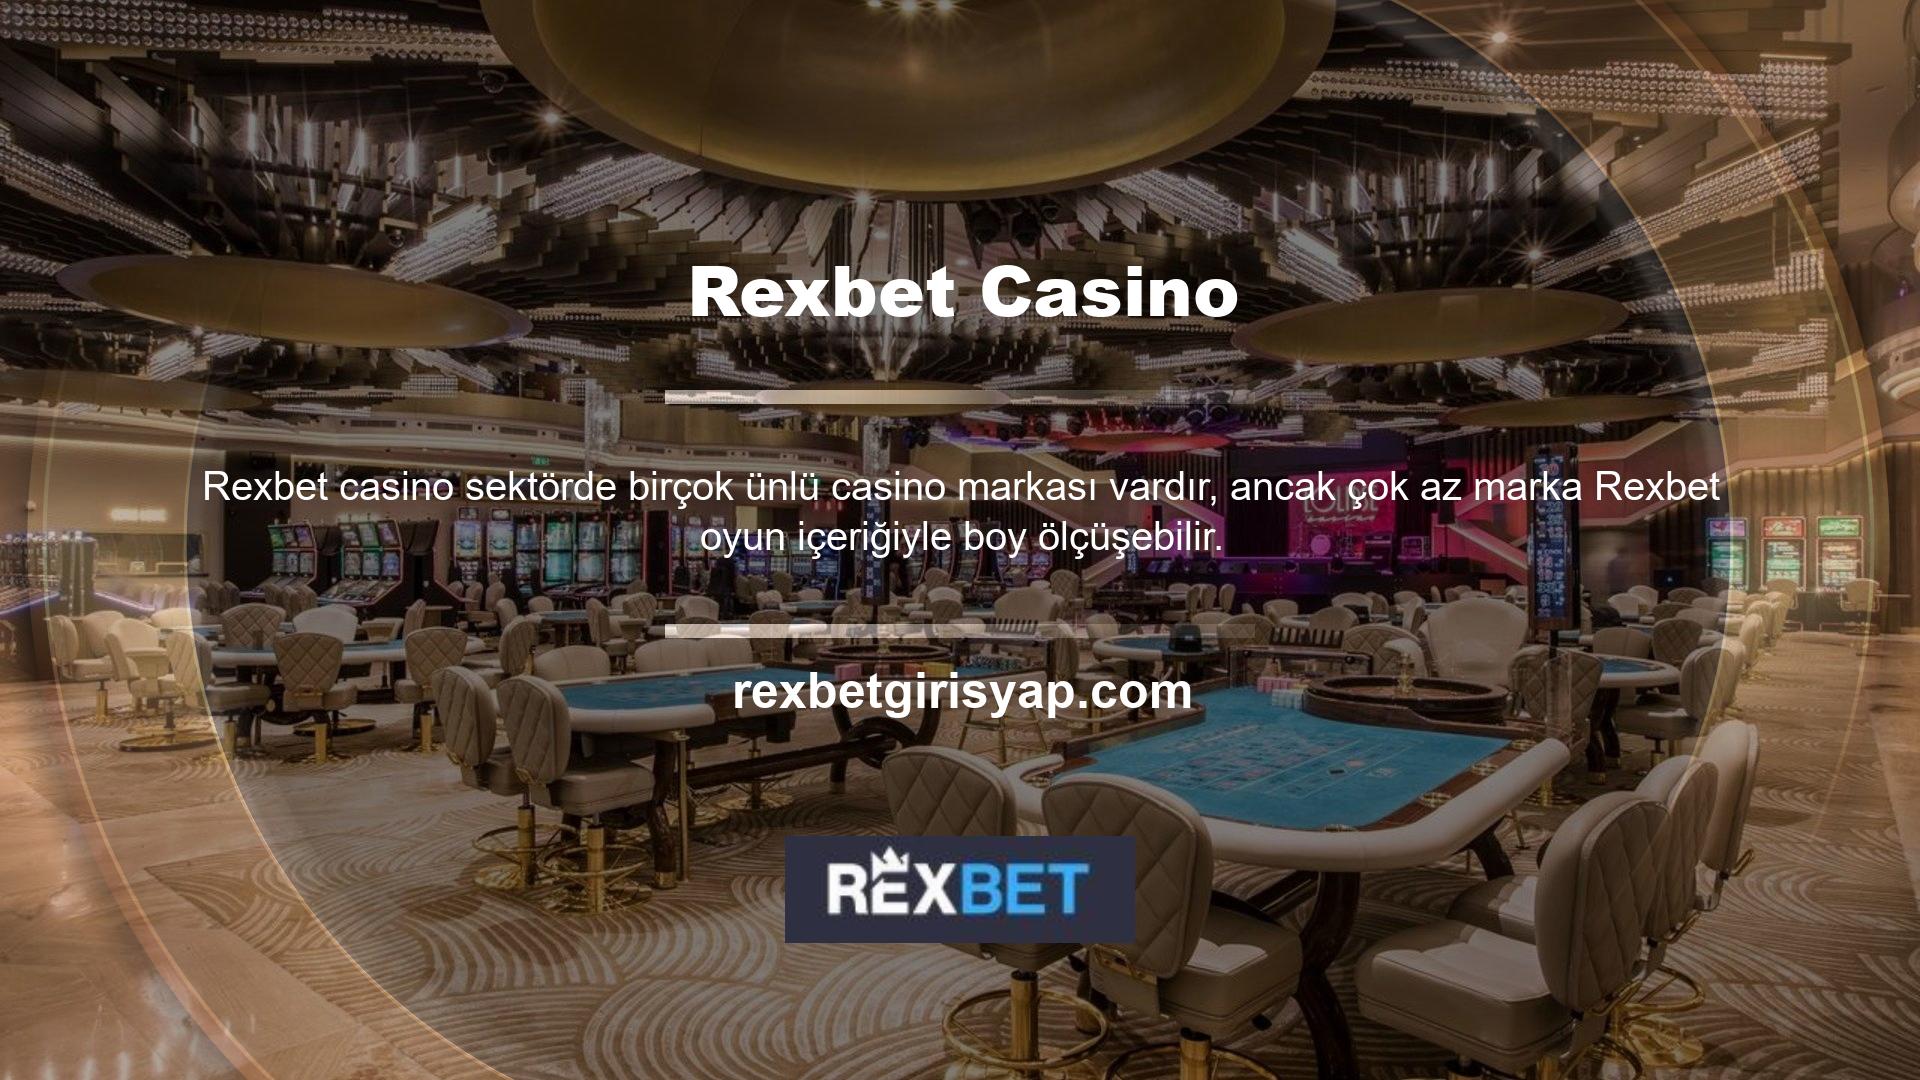 Birkaç yıl önce Rexbet, düzinelerce farklı sağlayıcıyı şimdiye kadarki en iyi ve en zengin casino oyun içeriğiyle entegre ederek birinci sınıf bir casino platformu oluşturdu ve işletti